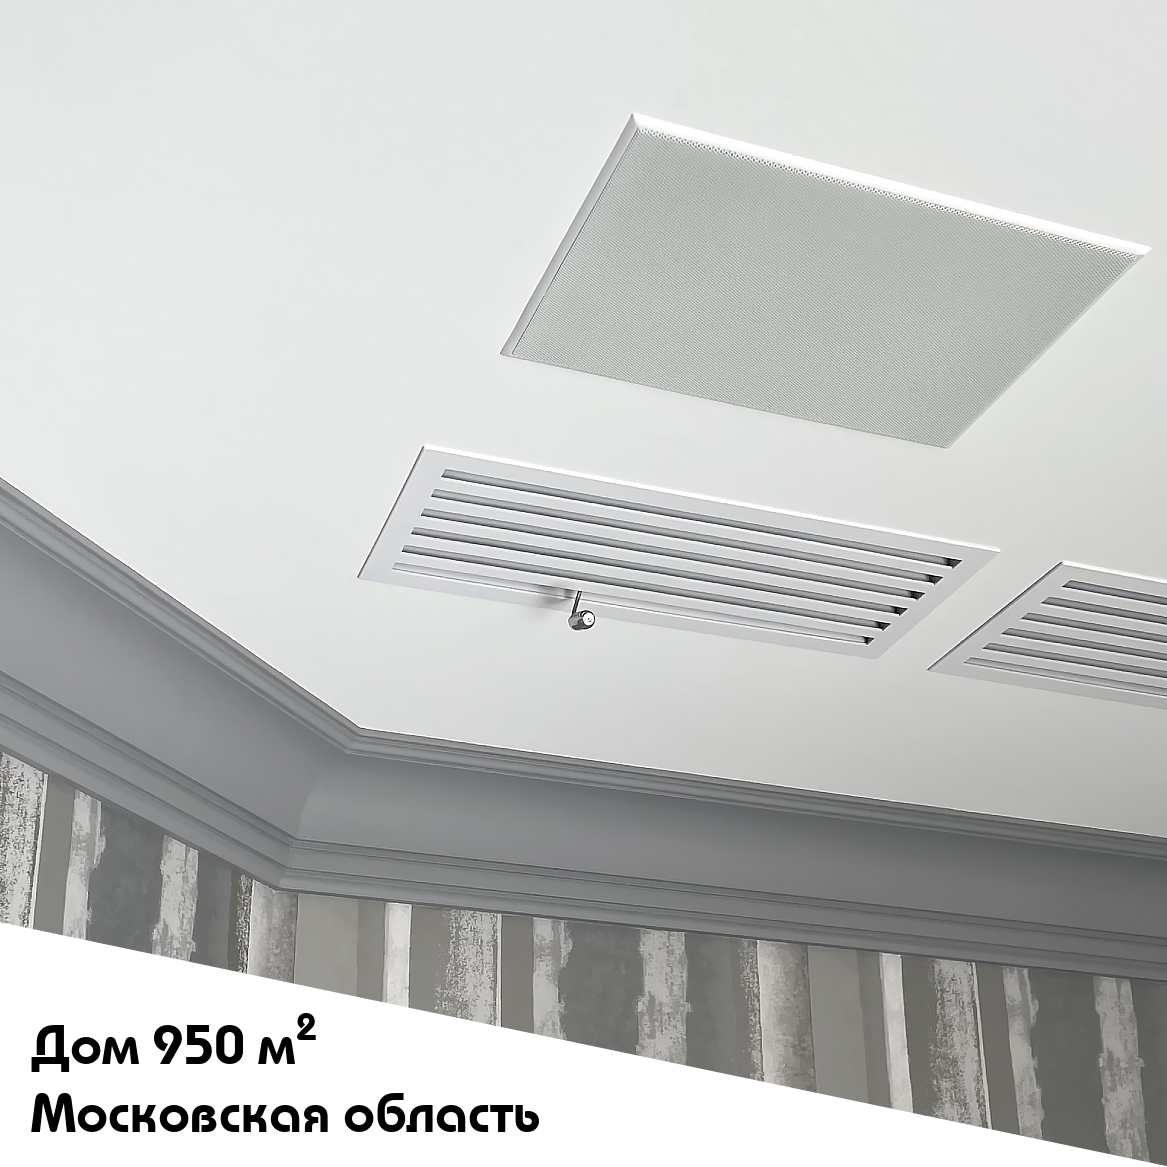 Выполненный объект. Система увлажнения для частного дома 950 м2 в Московской области